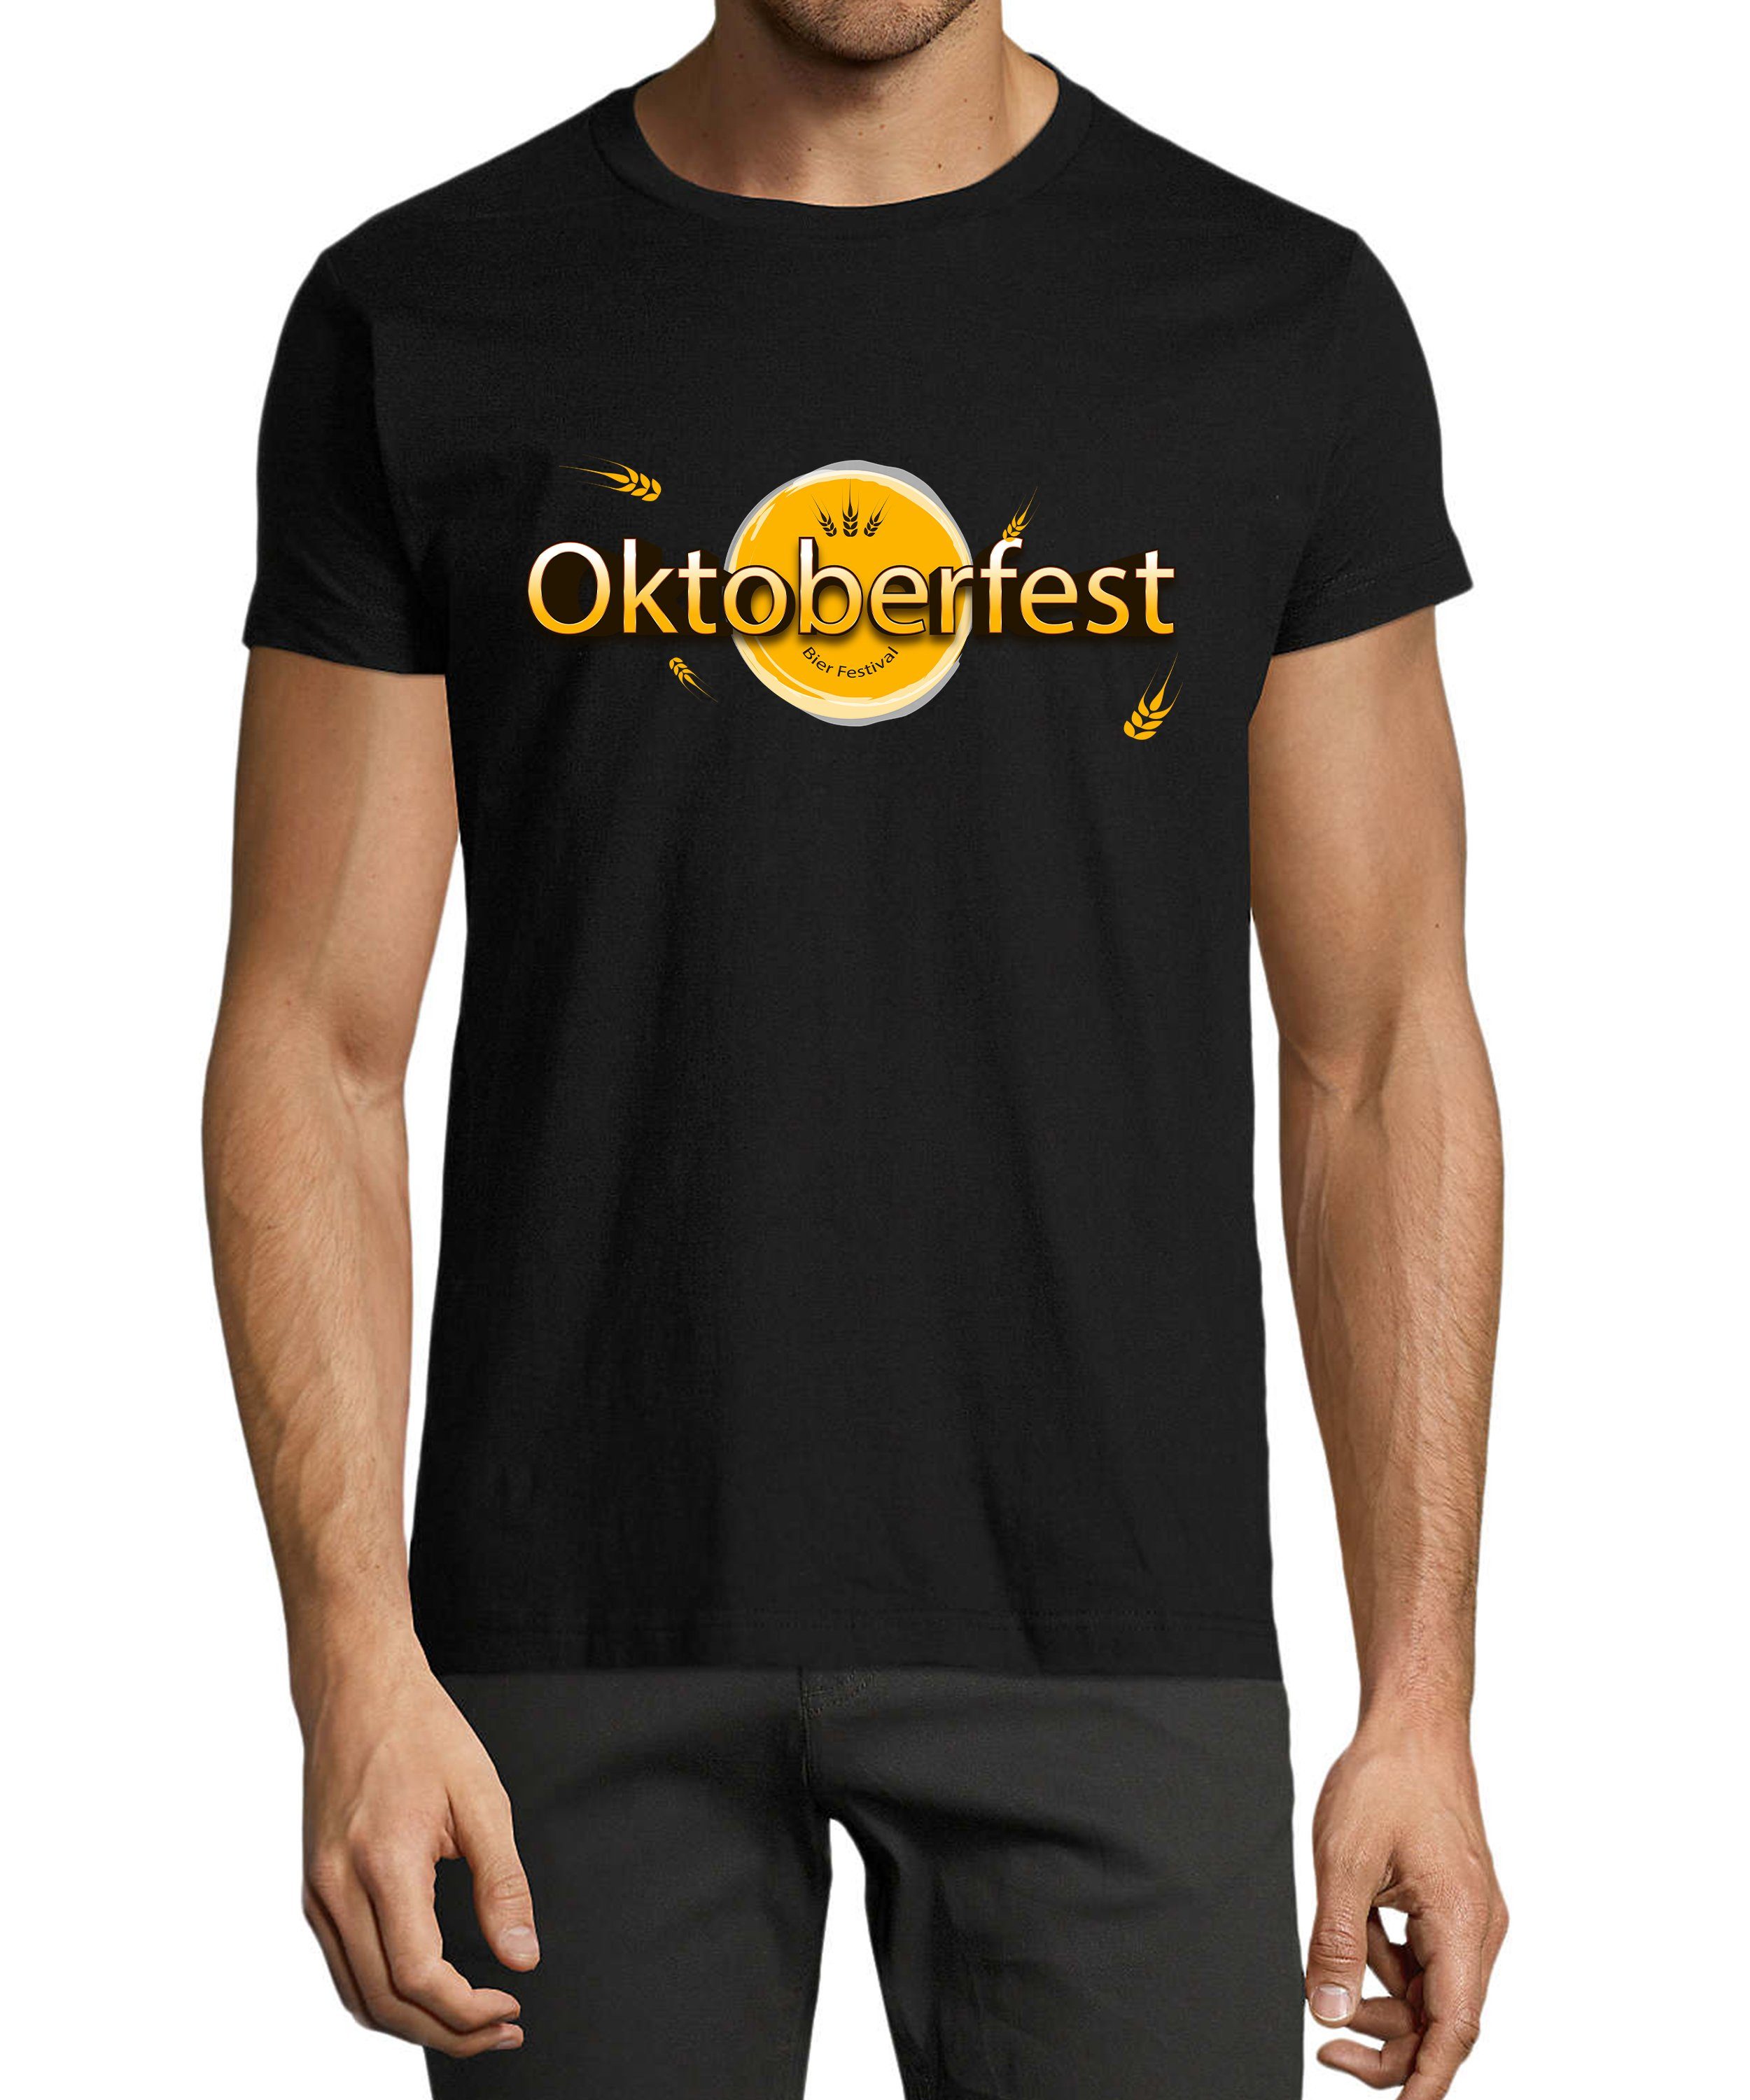 T-Shirt i325 Herren MyDesign24 T-Shirt Shirt Festival Regular Baumwollshirt Aufdruck mit Party Bier Fit, Oktoberfest schwarz - Trinkshirt